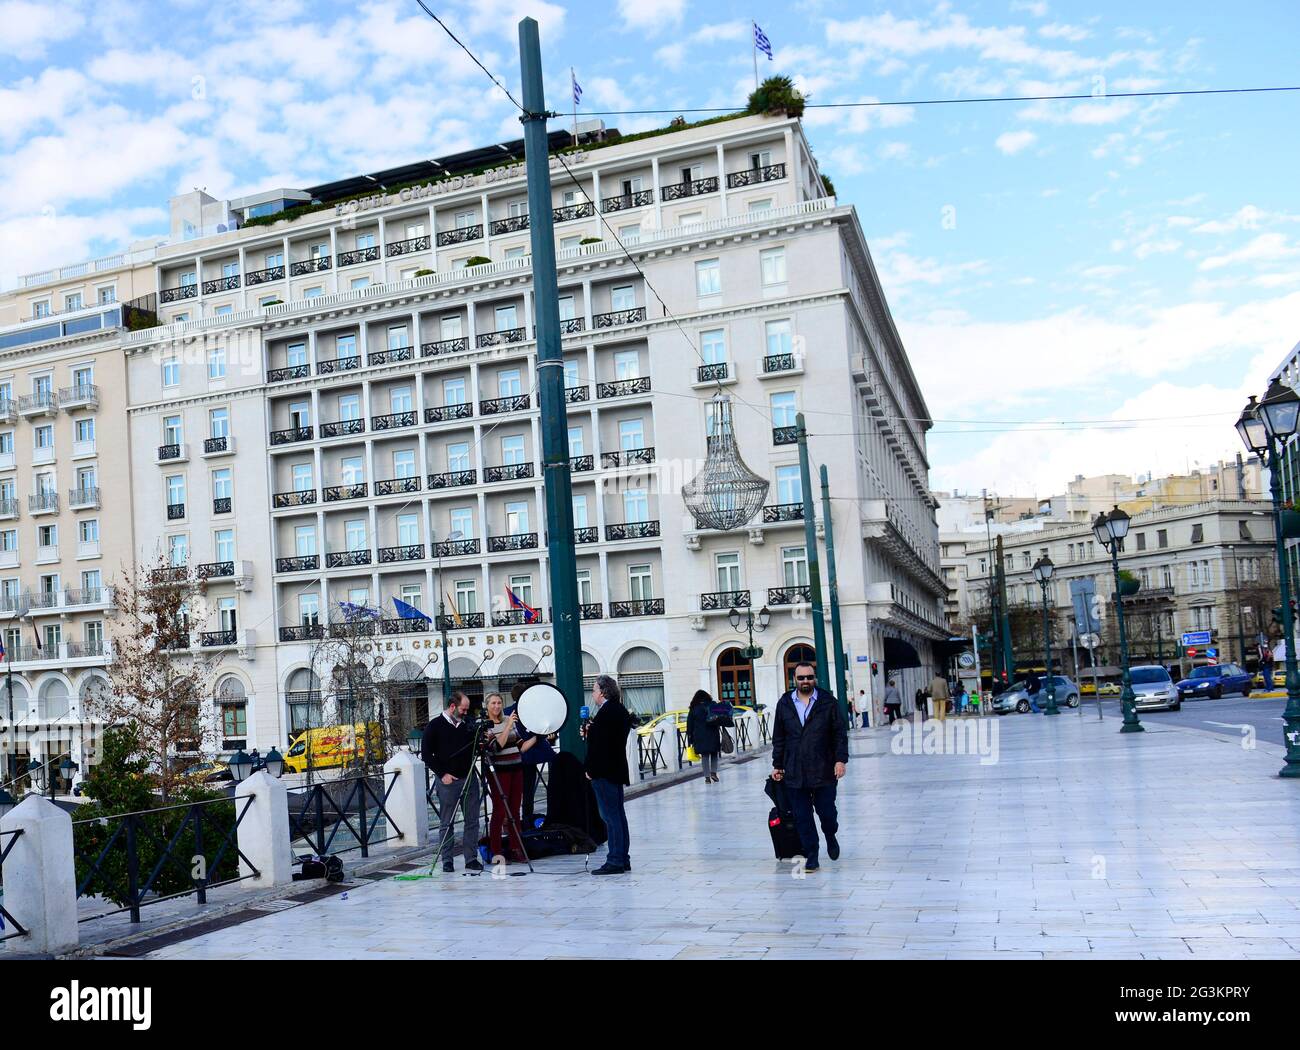 26. Jan 2015 - Frankreich24 Nachrichtenreporter und Crew berichten vom Syntagma-Platz während der politischen Krisen in Griechenland. Stockfoto